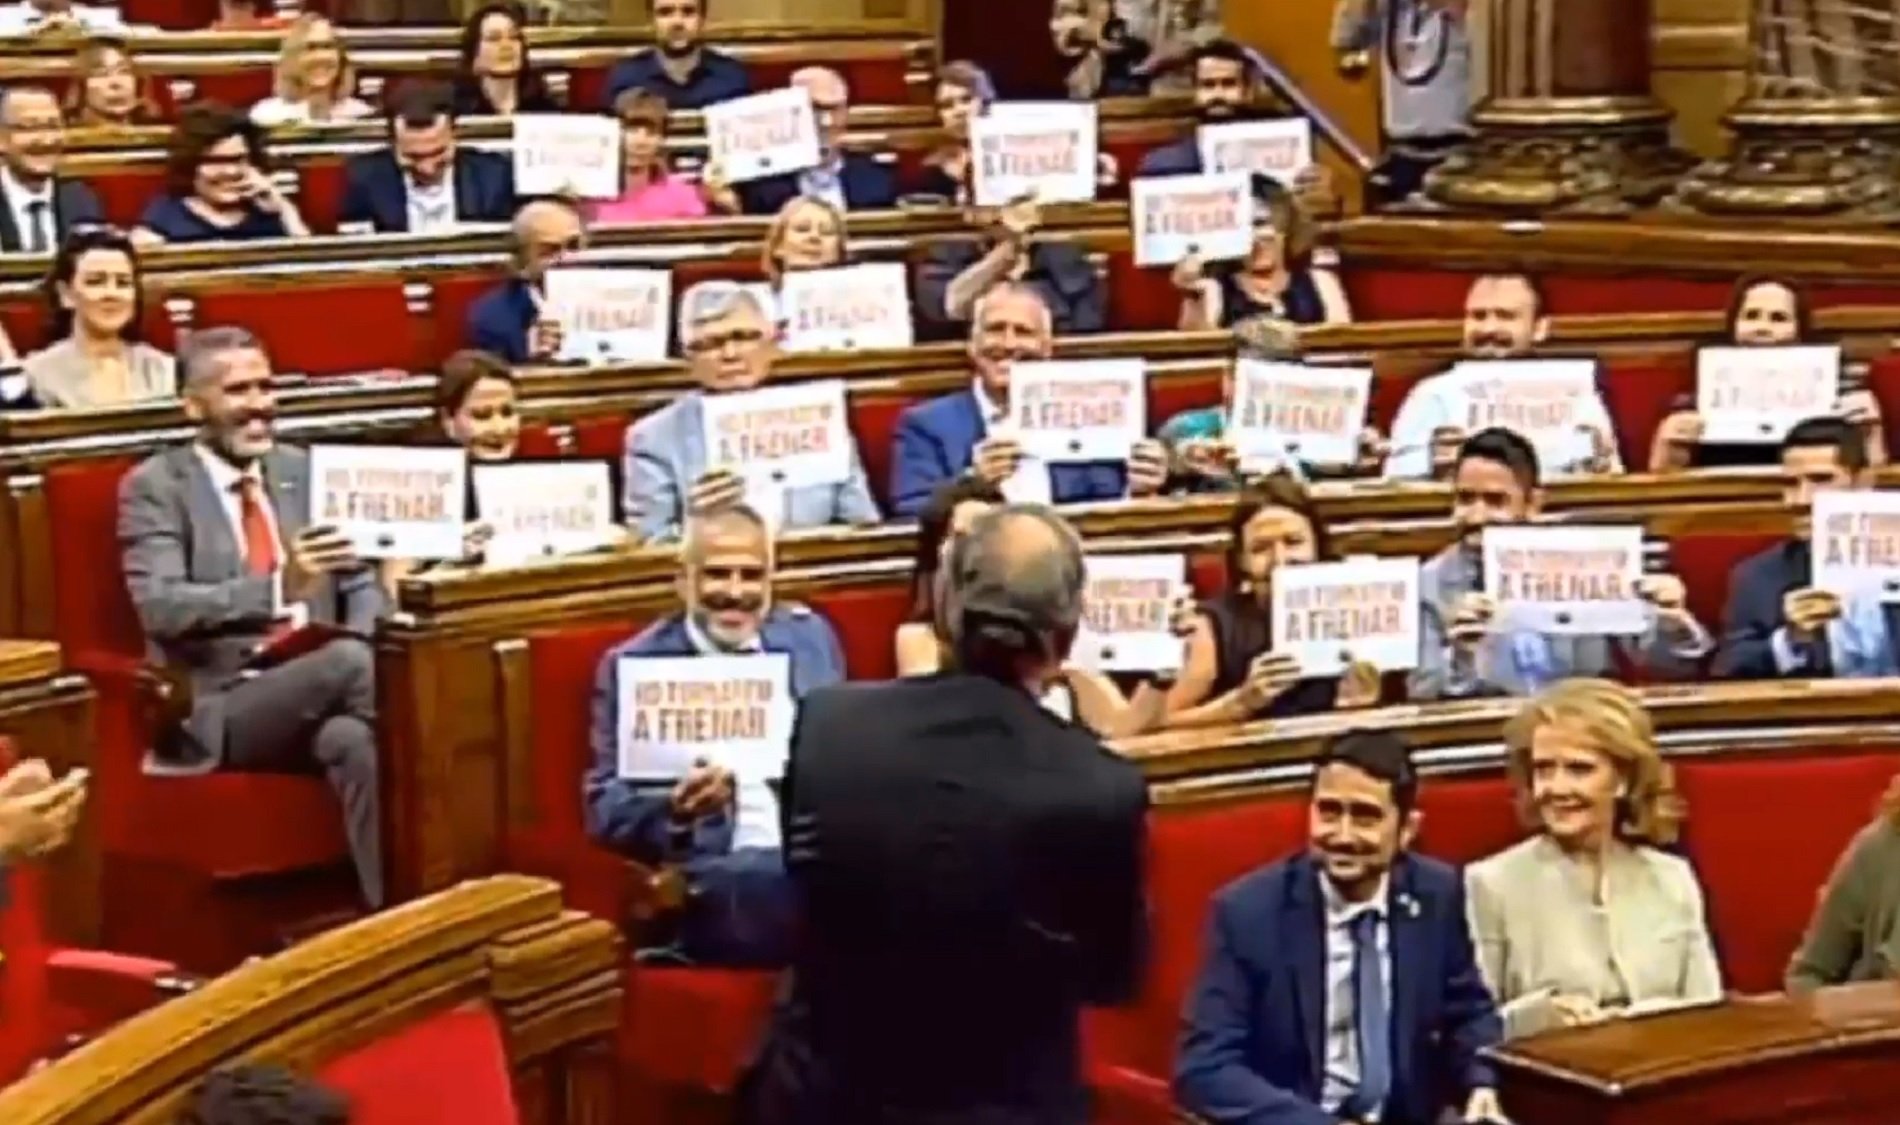 VÍDEO | Cs hi torna amb els cartells, ara amb el lema "Ho tornarem a frenar"